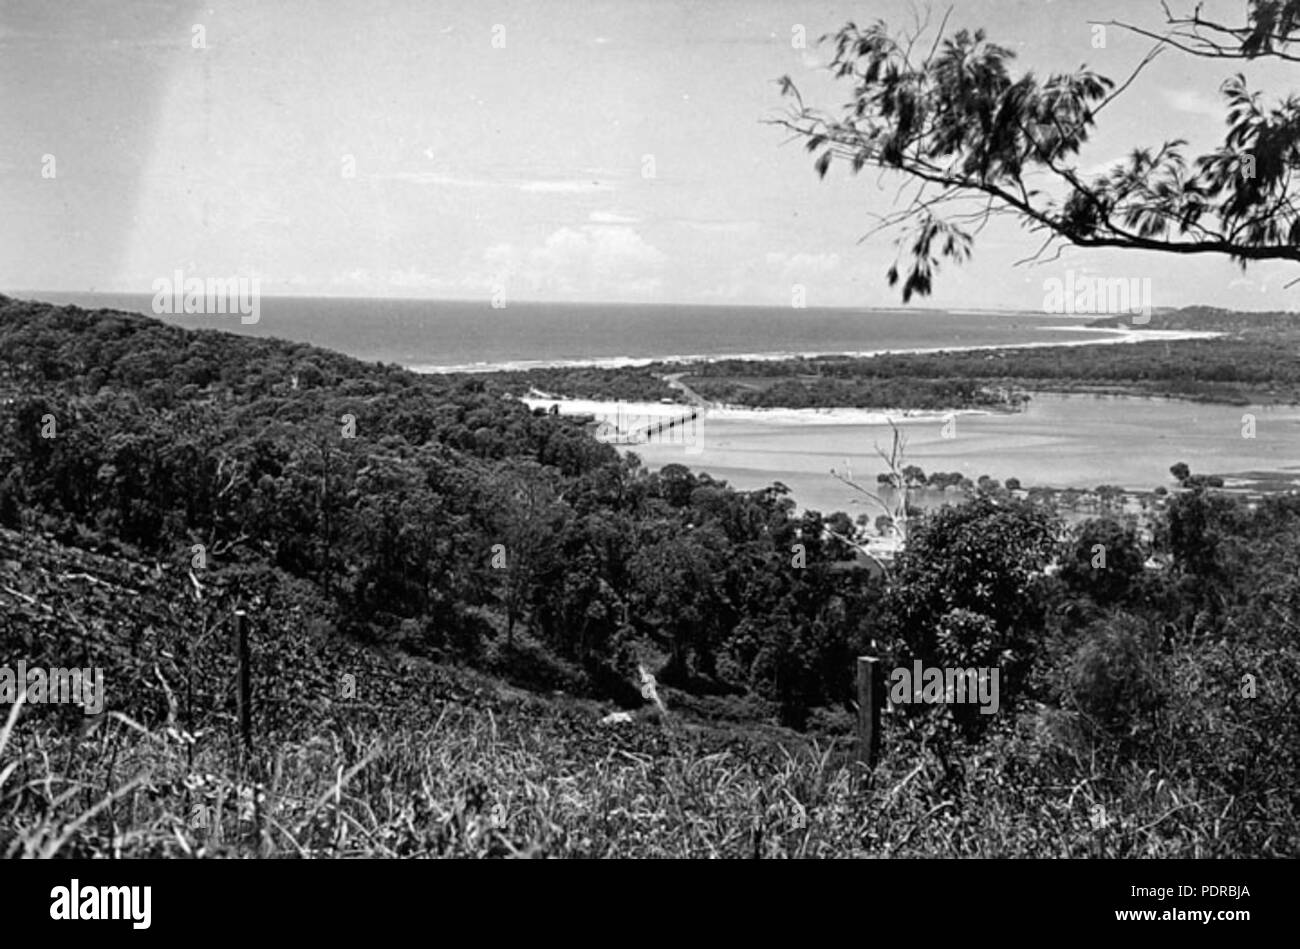 105 Archivos del Estado de Queensland 2047 Pacific Highway principal del depósito Cerro mostrando Burleigh Heads Tallebudgera Creek Currumbin Coolangatta y Tweed Heads en la distancia C 1934 Foto de stock